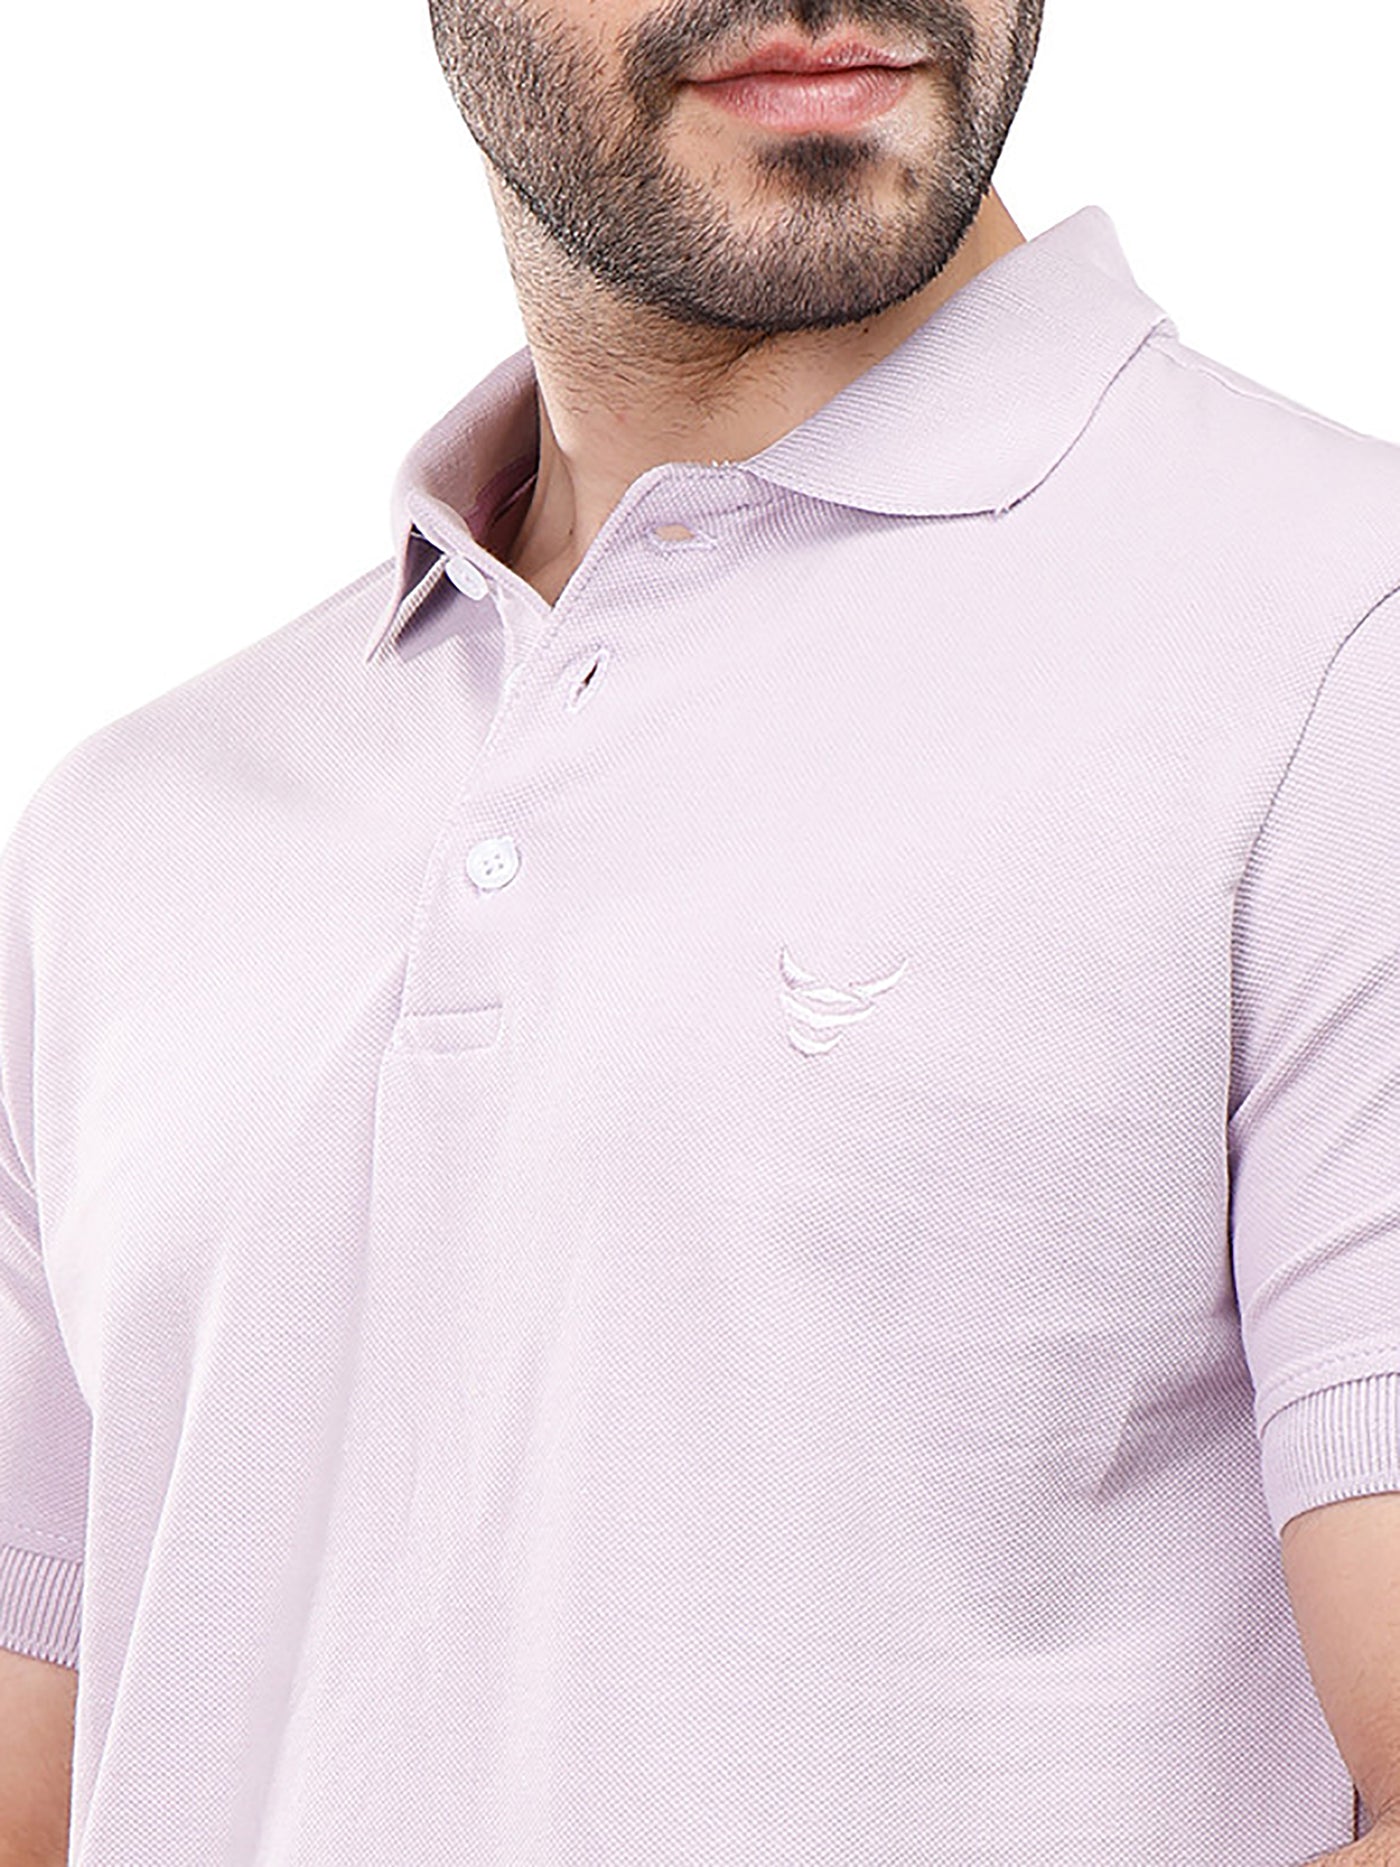 Polo Shirt - Plain - Half Sleeve